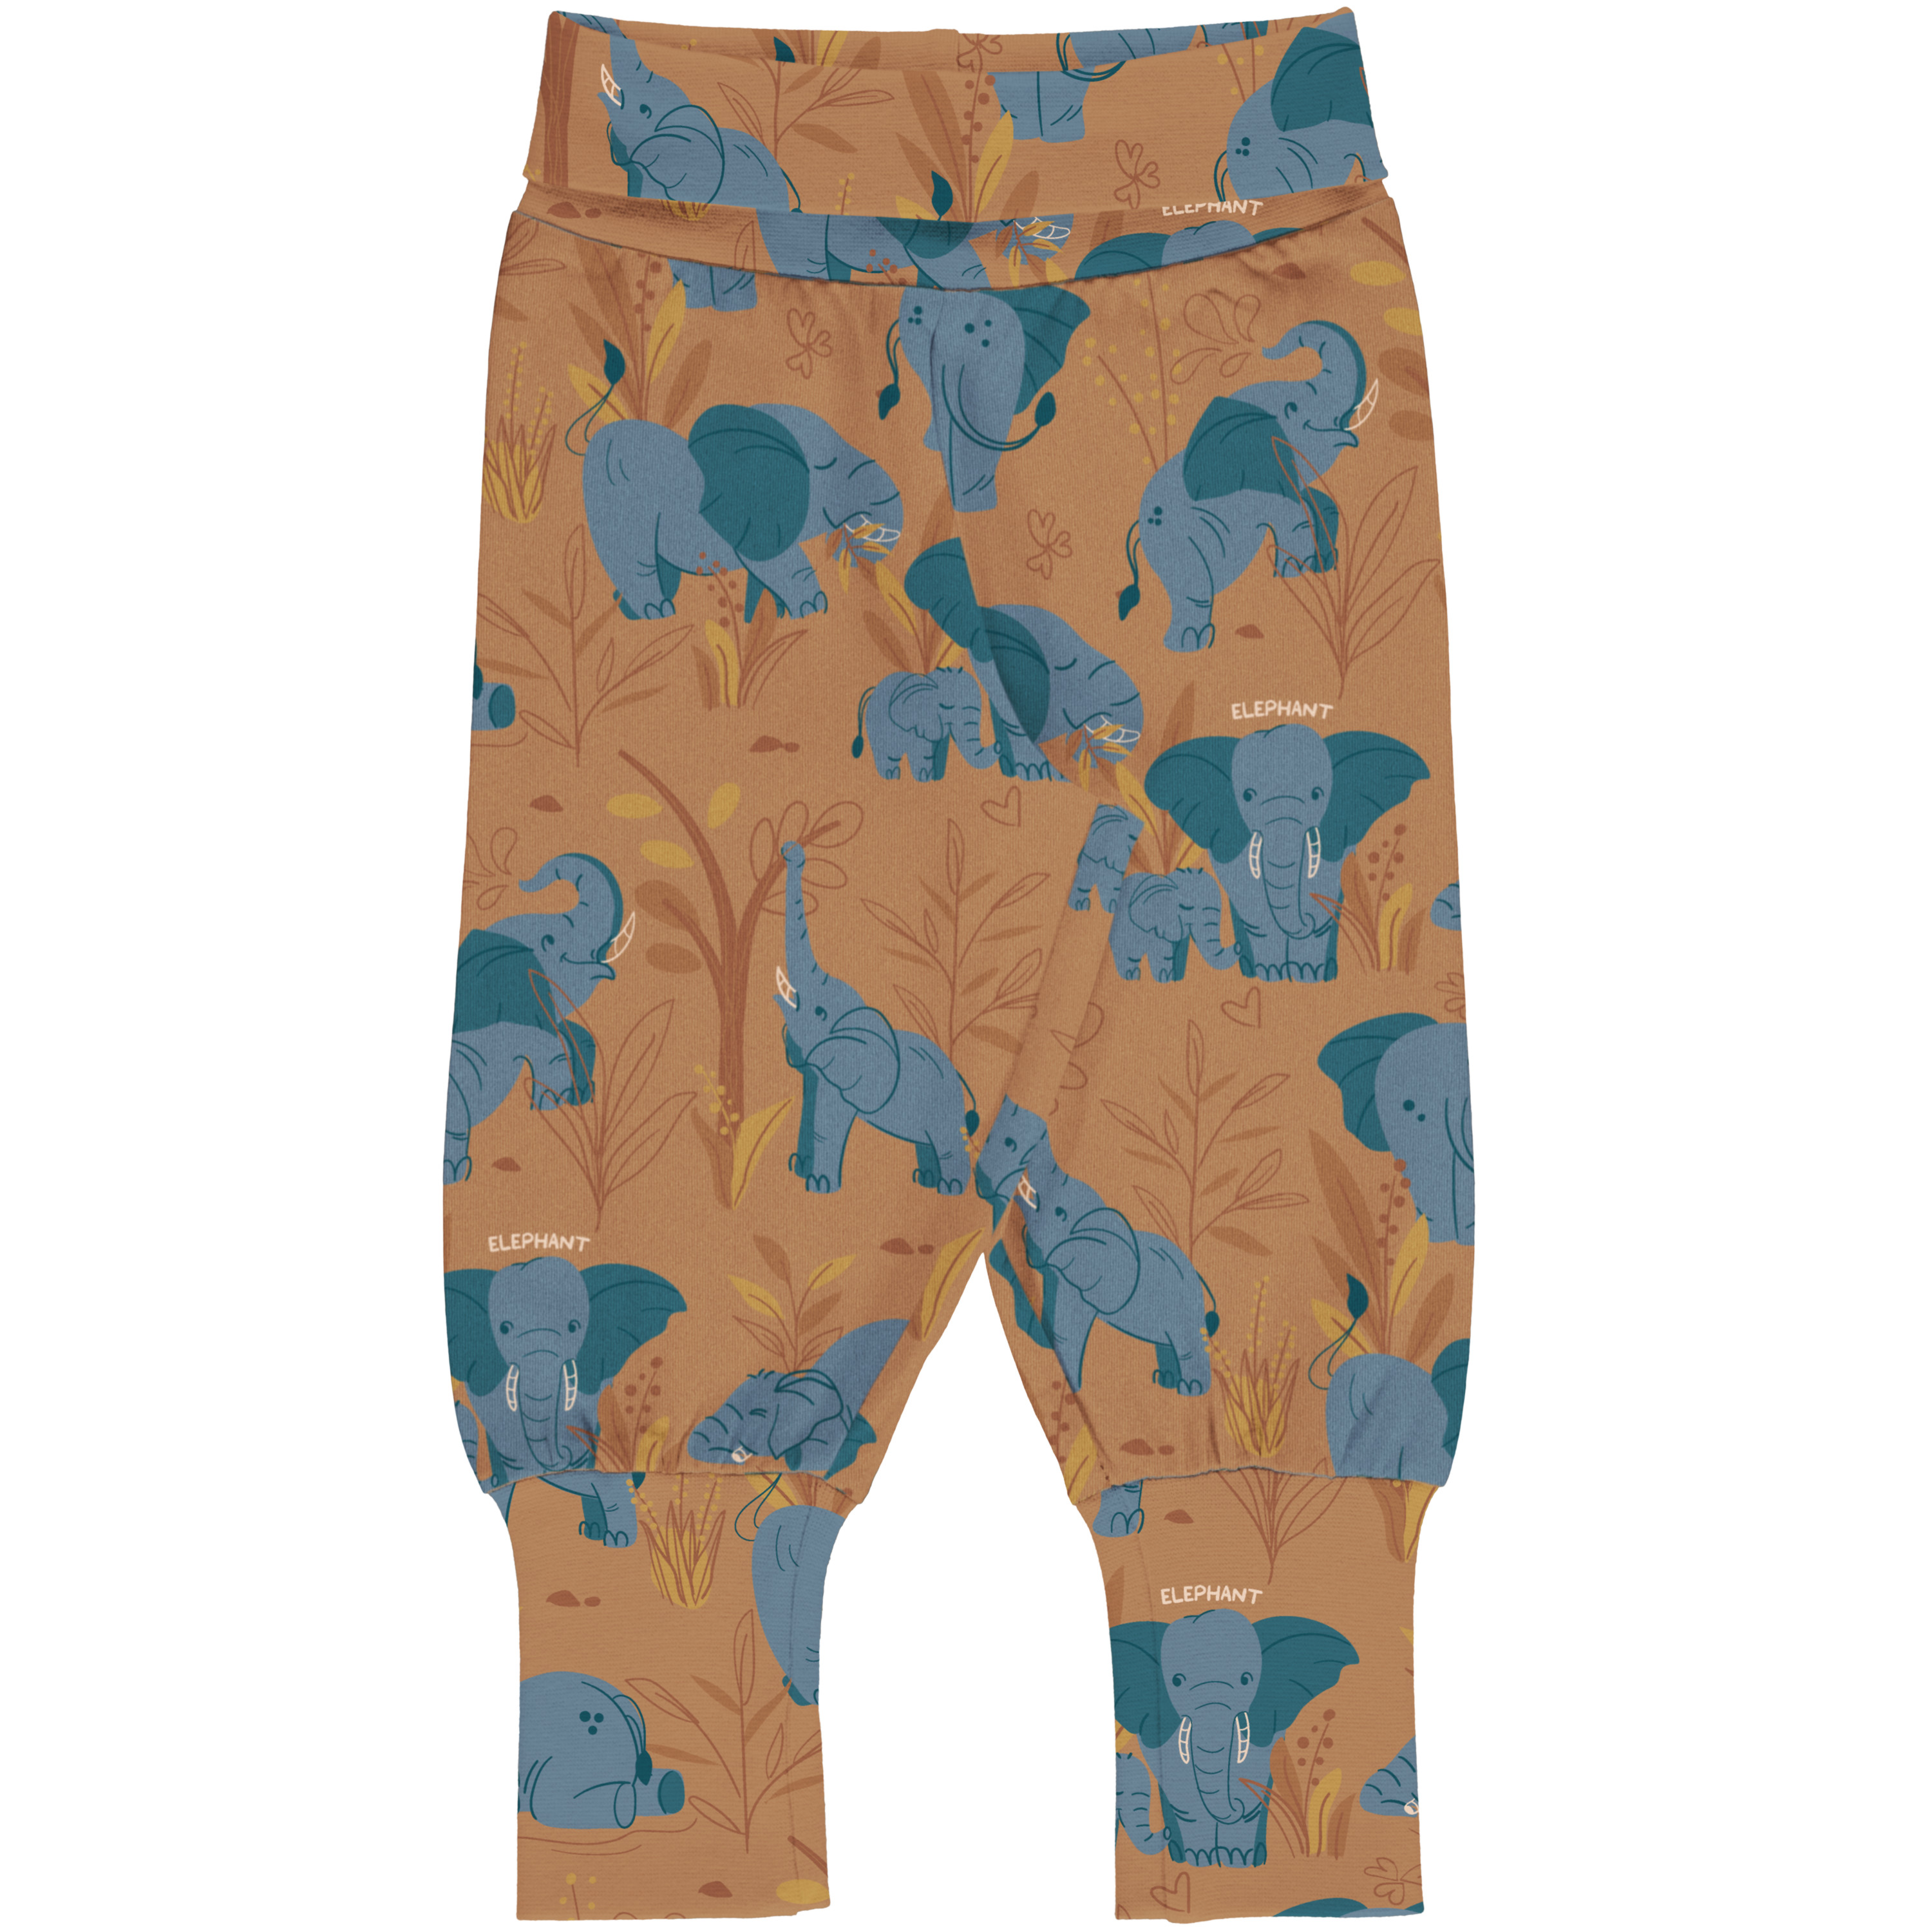 Meyadey Pants Waist ELEPHANT CLAN 098/104